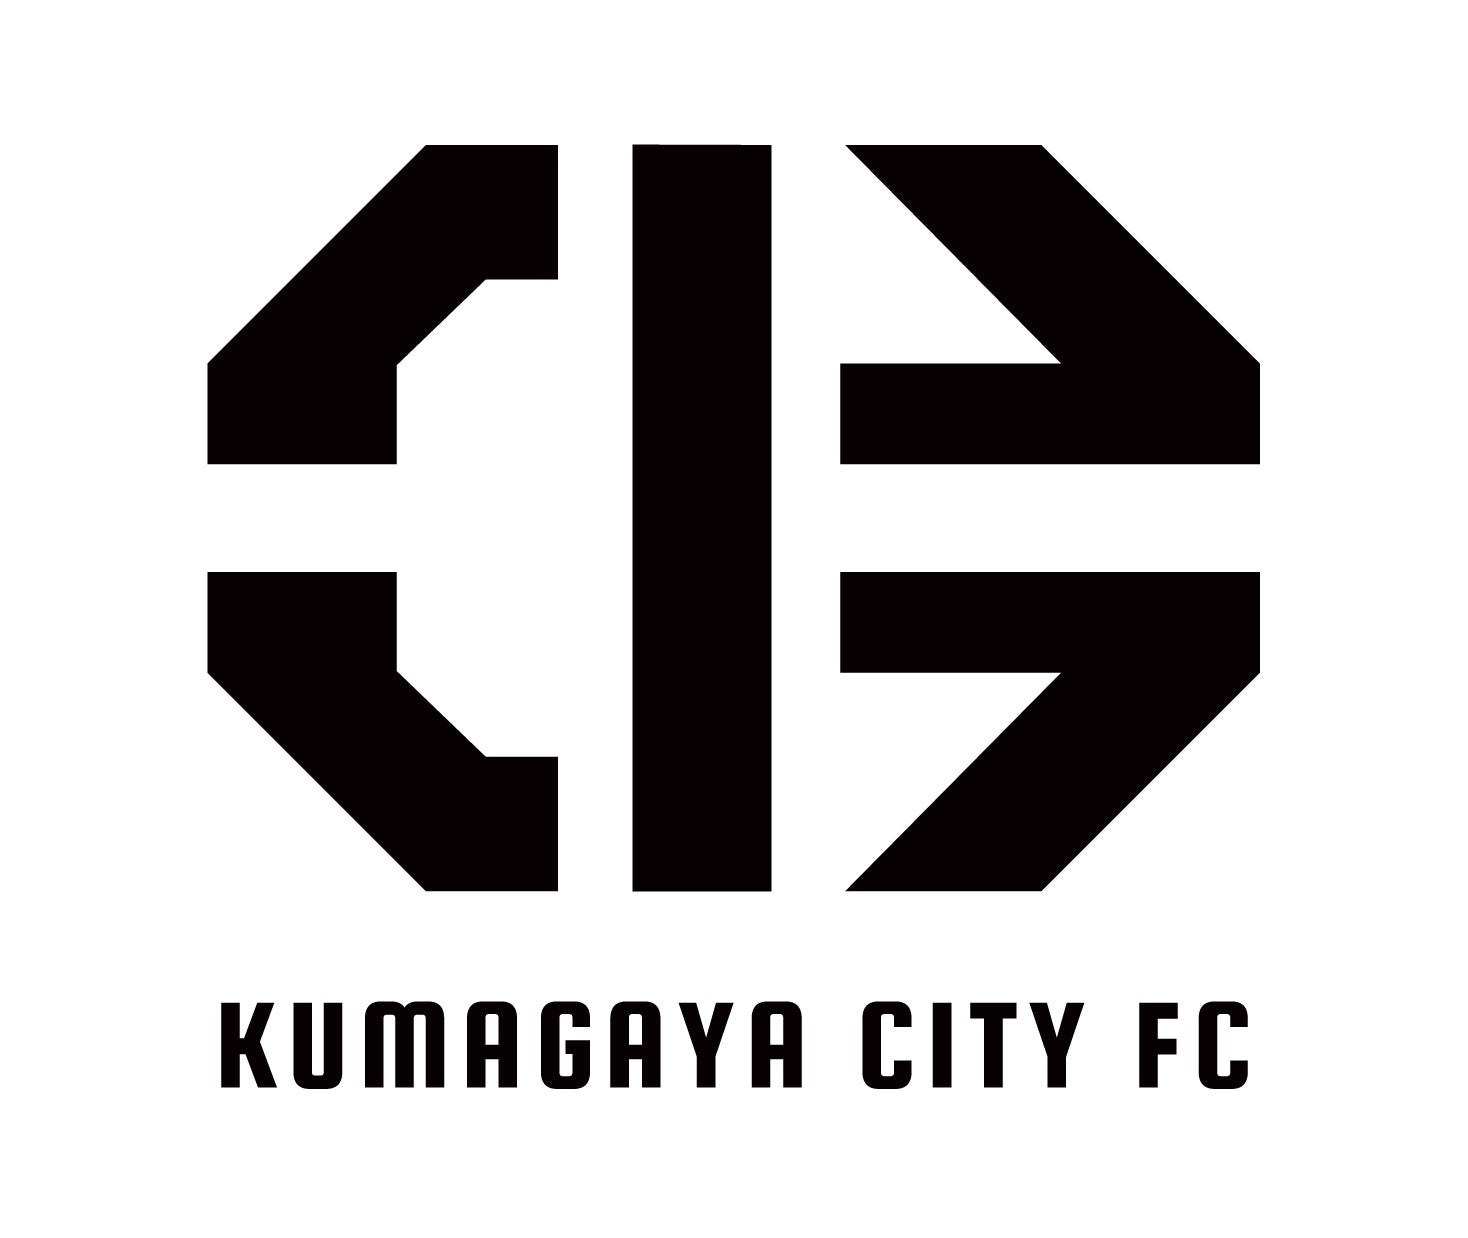 埼玉県熊谷市からJリーグを目指す「KUMAGAYA CITY FC」が『熊谷温泉 湯楽の里』とオフィシャルトップパートナ...